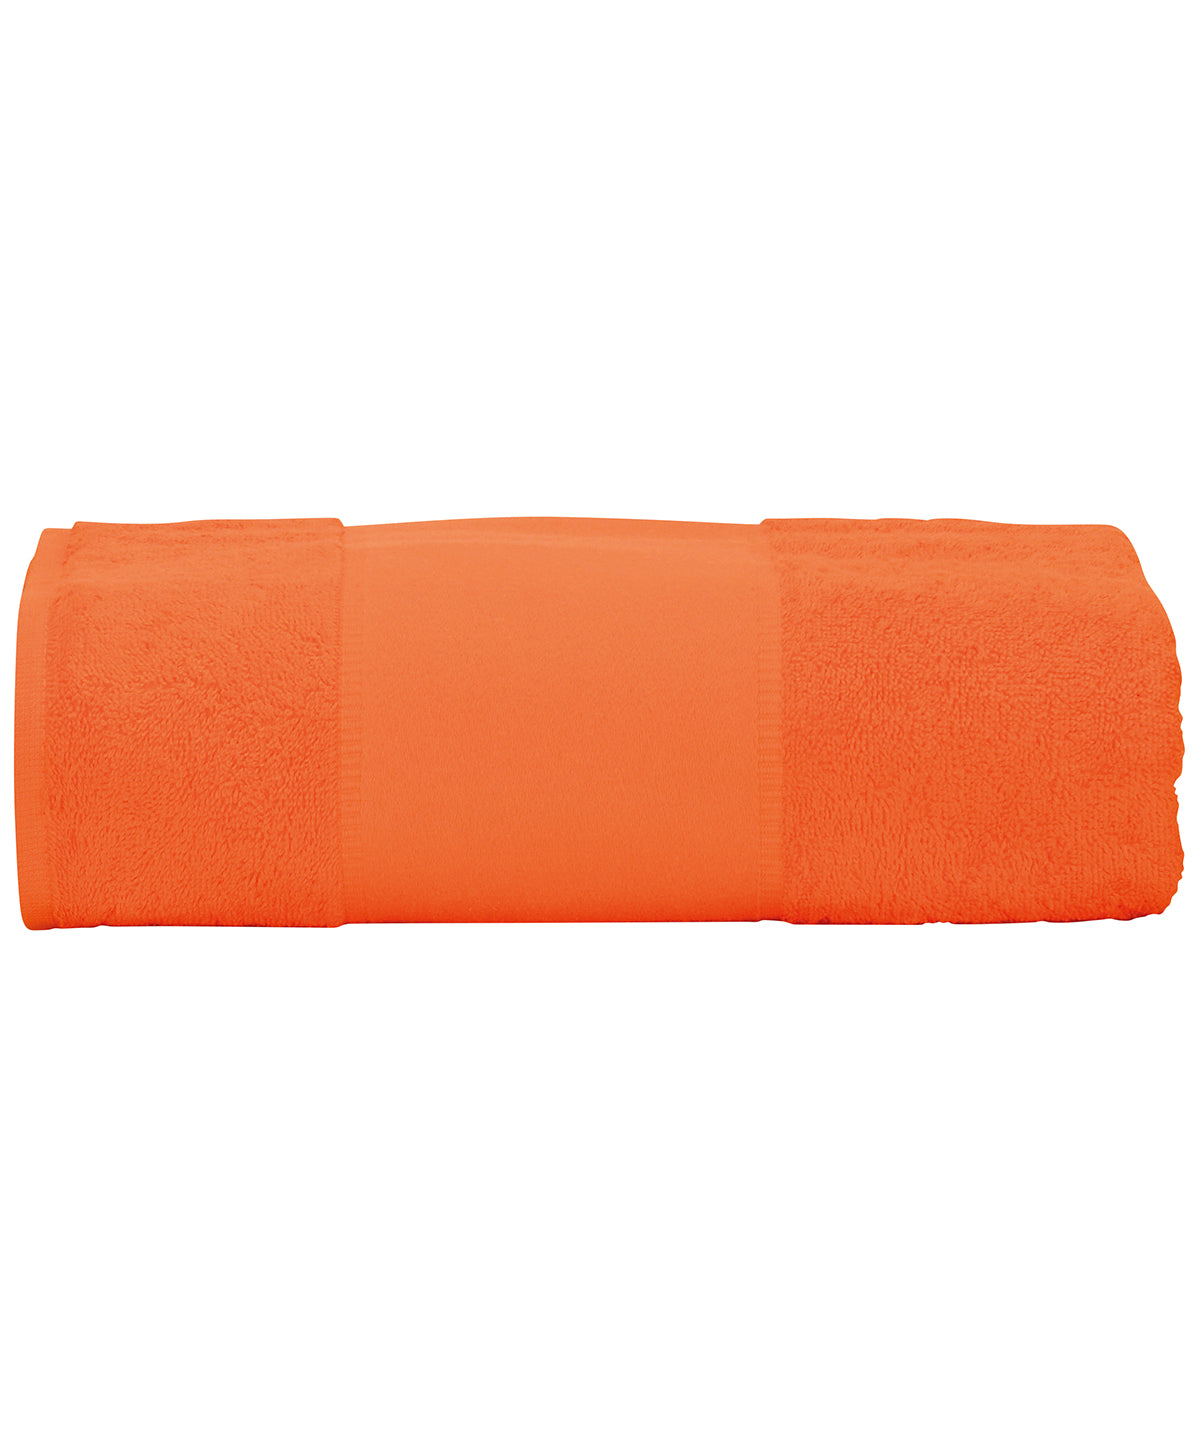 Personalised Towels - Mid Orange A&R Towels ARTG® PRINT-Me® big towel